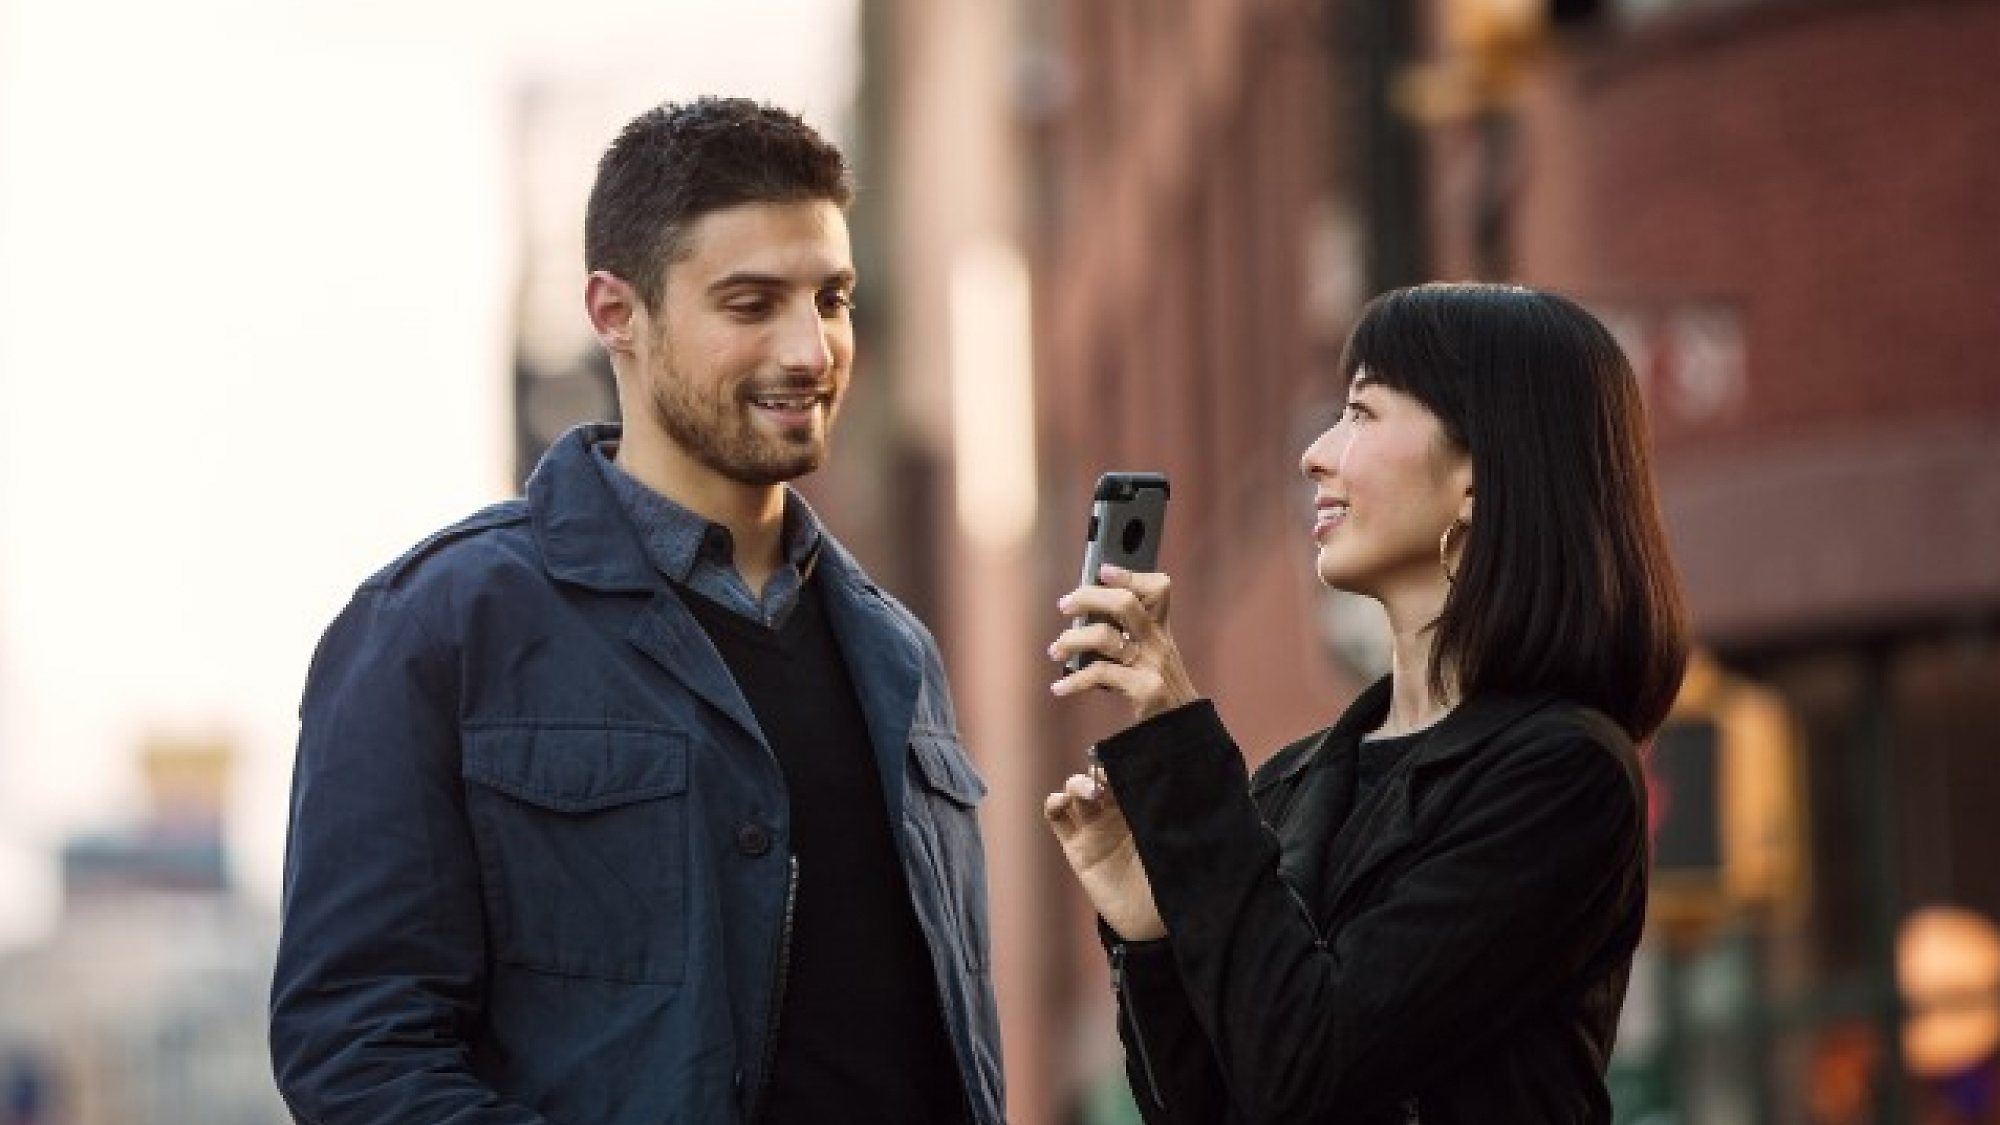 ผู้หญิงถือสมาร์ทโฟนโดยหันไปทางผู้ชาย ซึ่งทั้งสองคนยืนอยู่บนถนนในเมือง โดยกำลังยิ้มและสนทนากันอยู่